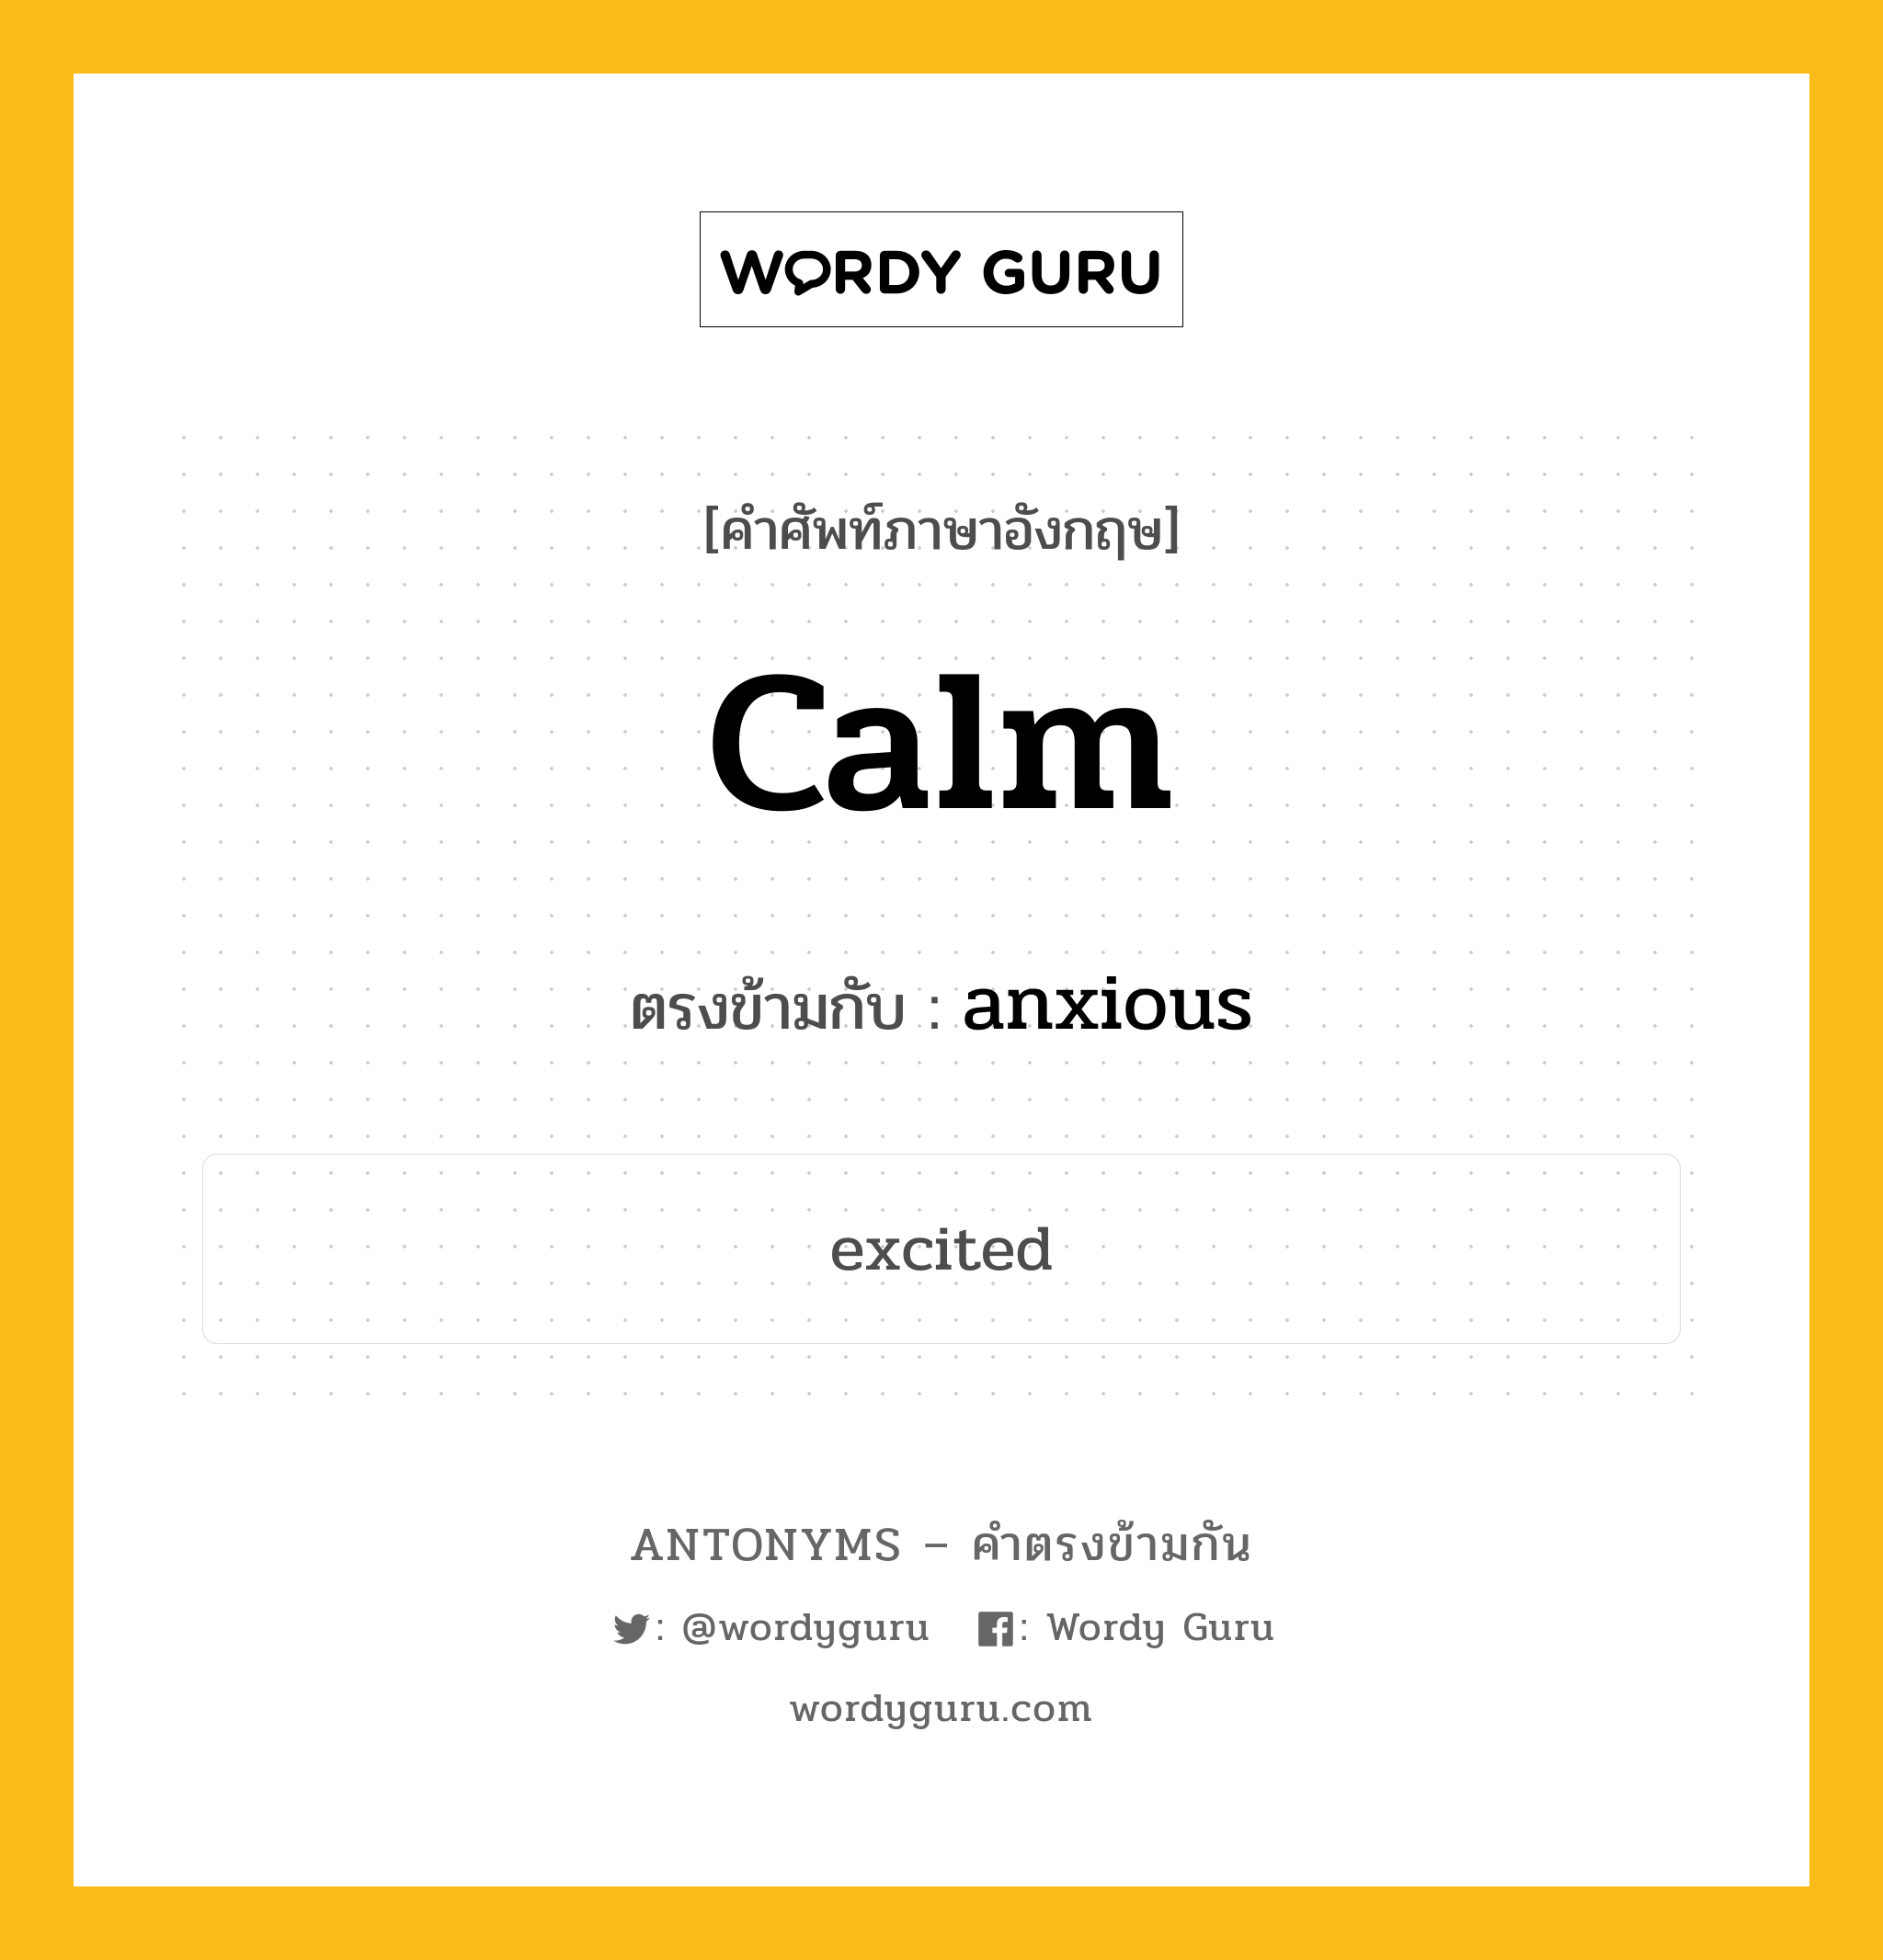 calm เป็นคำตรงข้ามกับคำไหนบ้าง?, คำศัพท์ภาษาอังกฤษ calm ตรงข้ามกับ anxious หมวด anxious